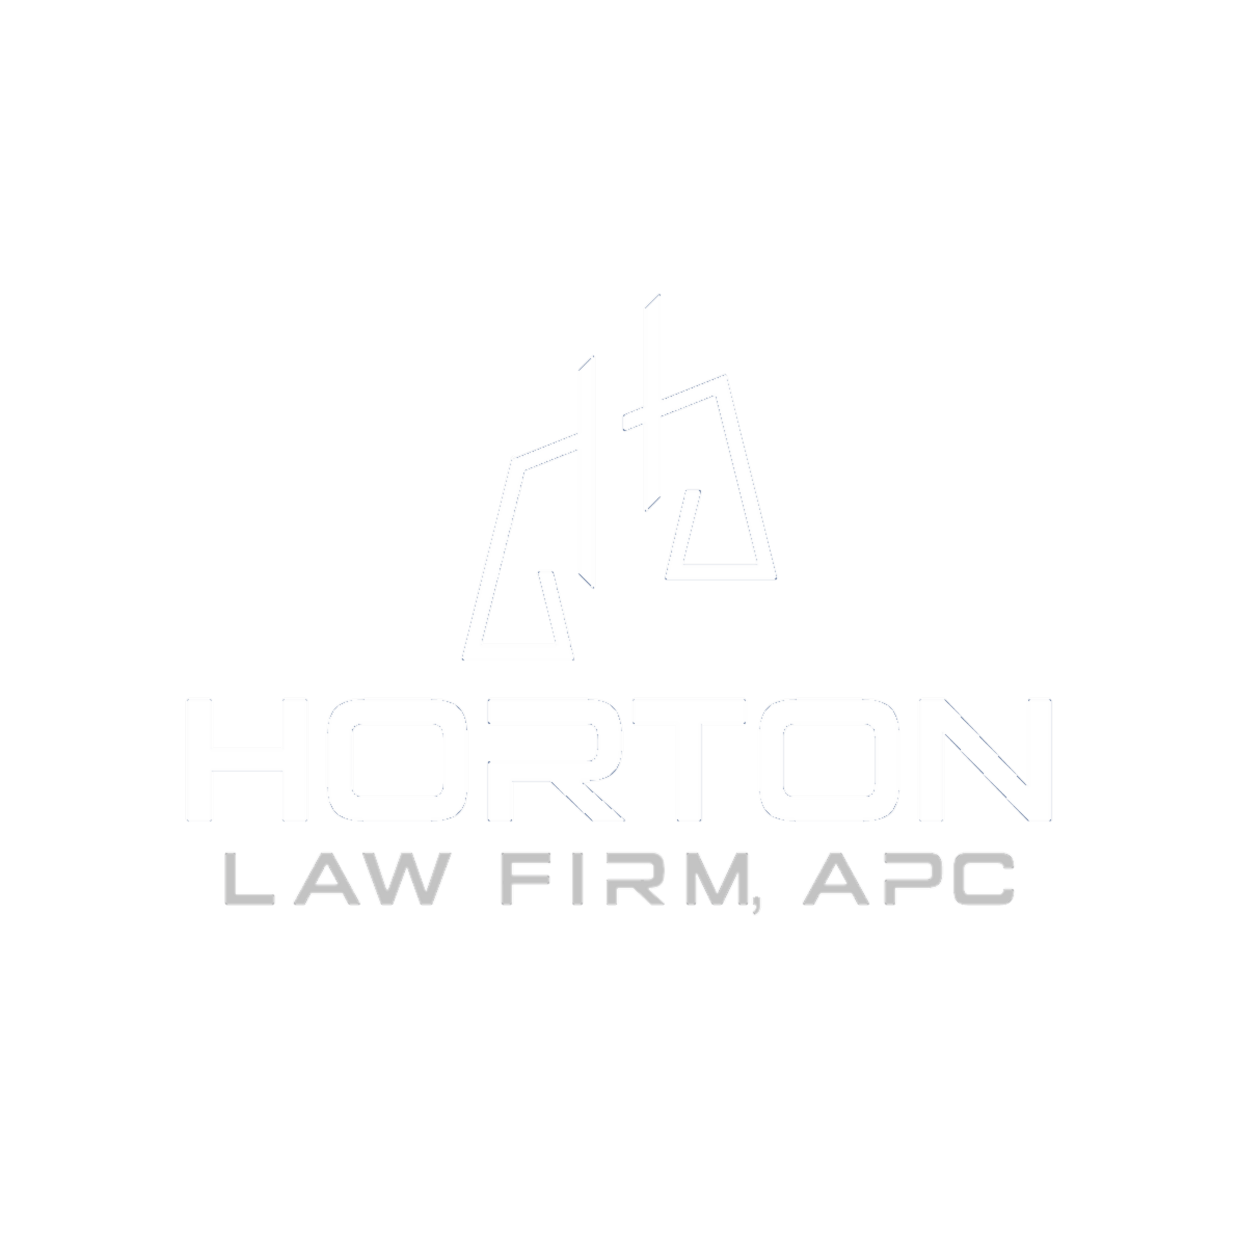 Horton Law Firm, APC